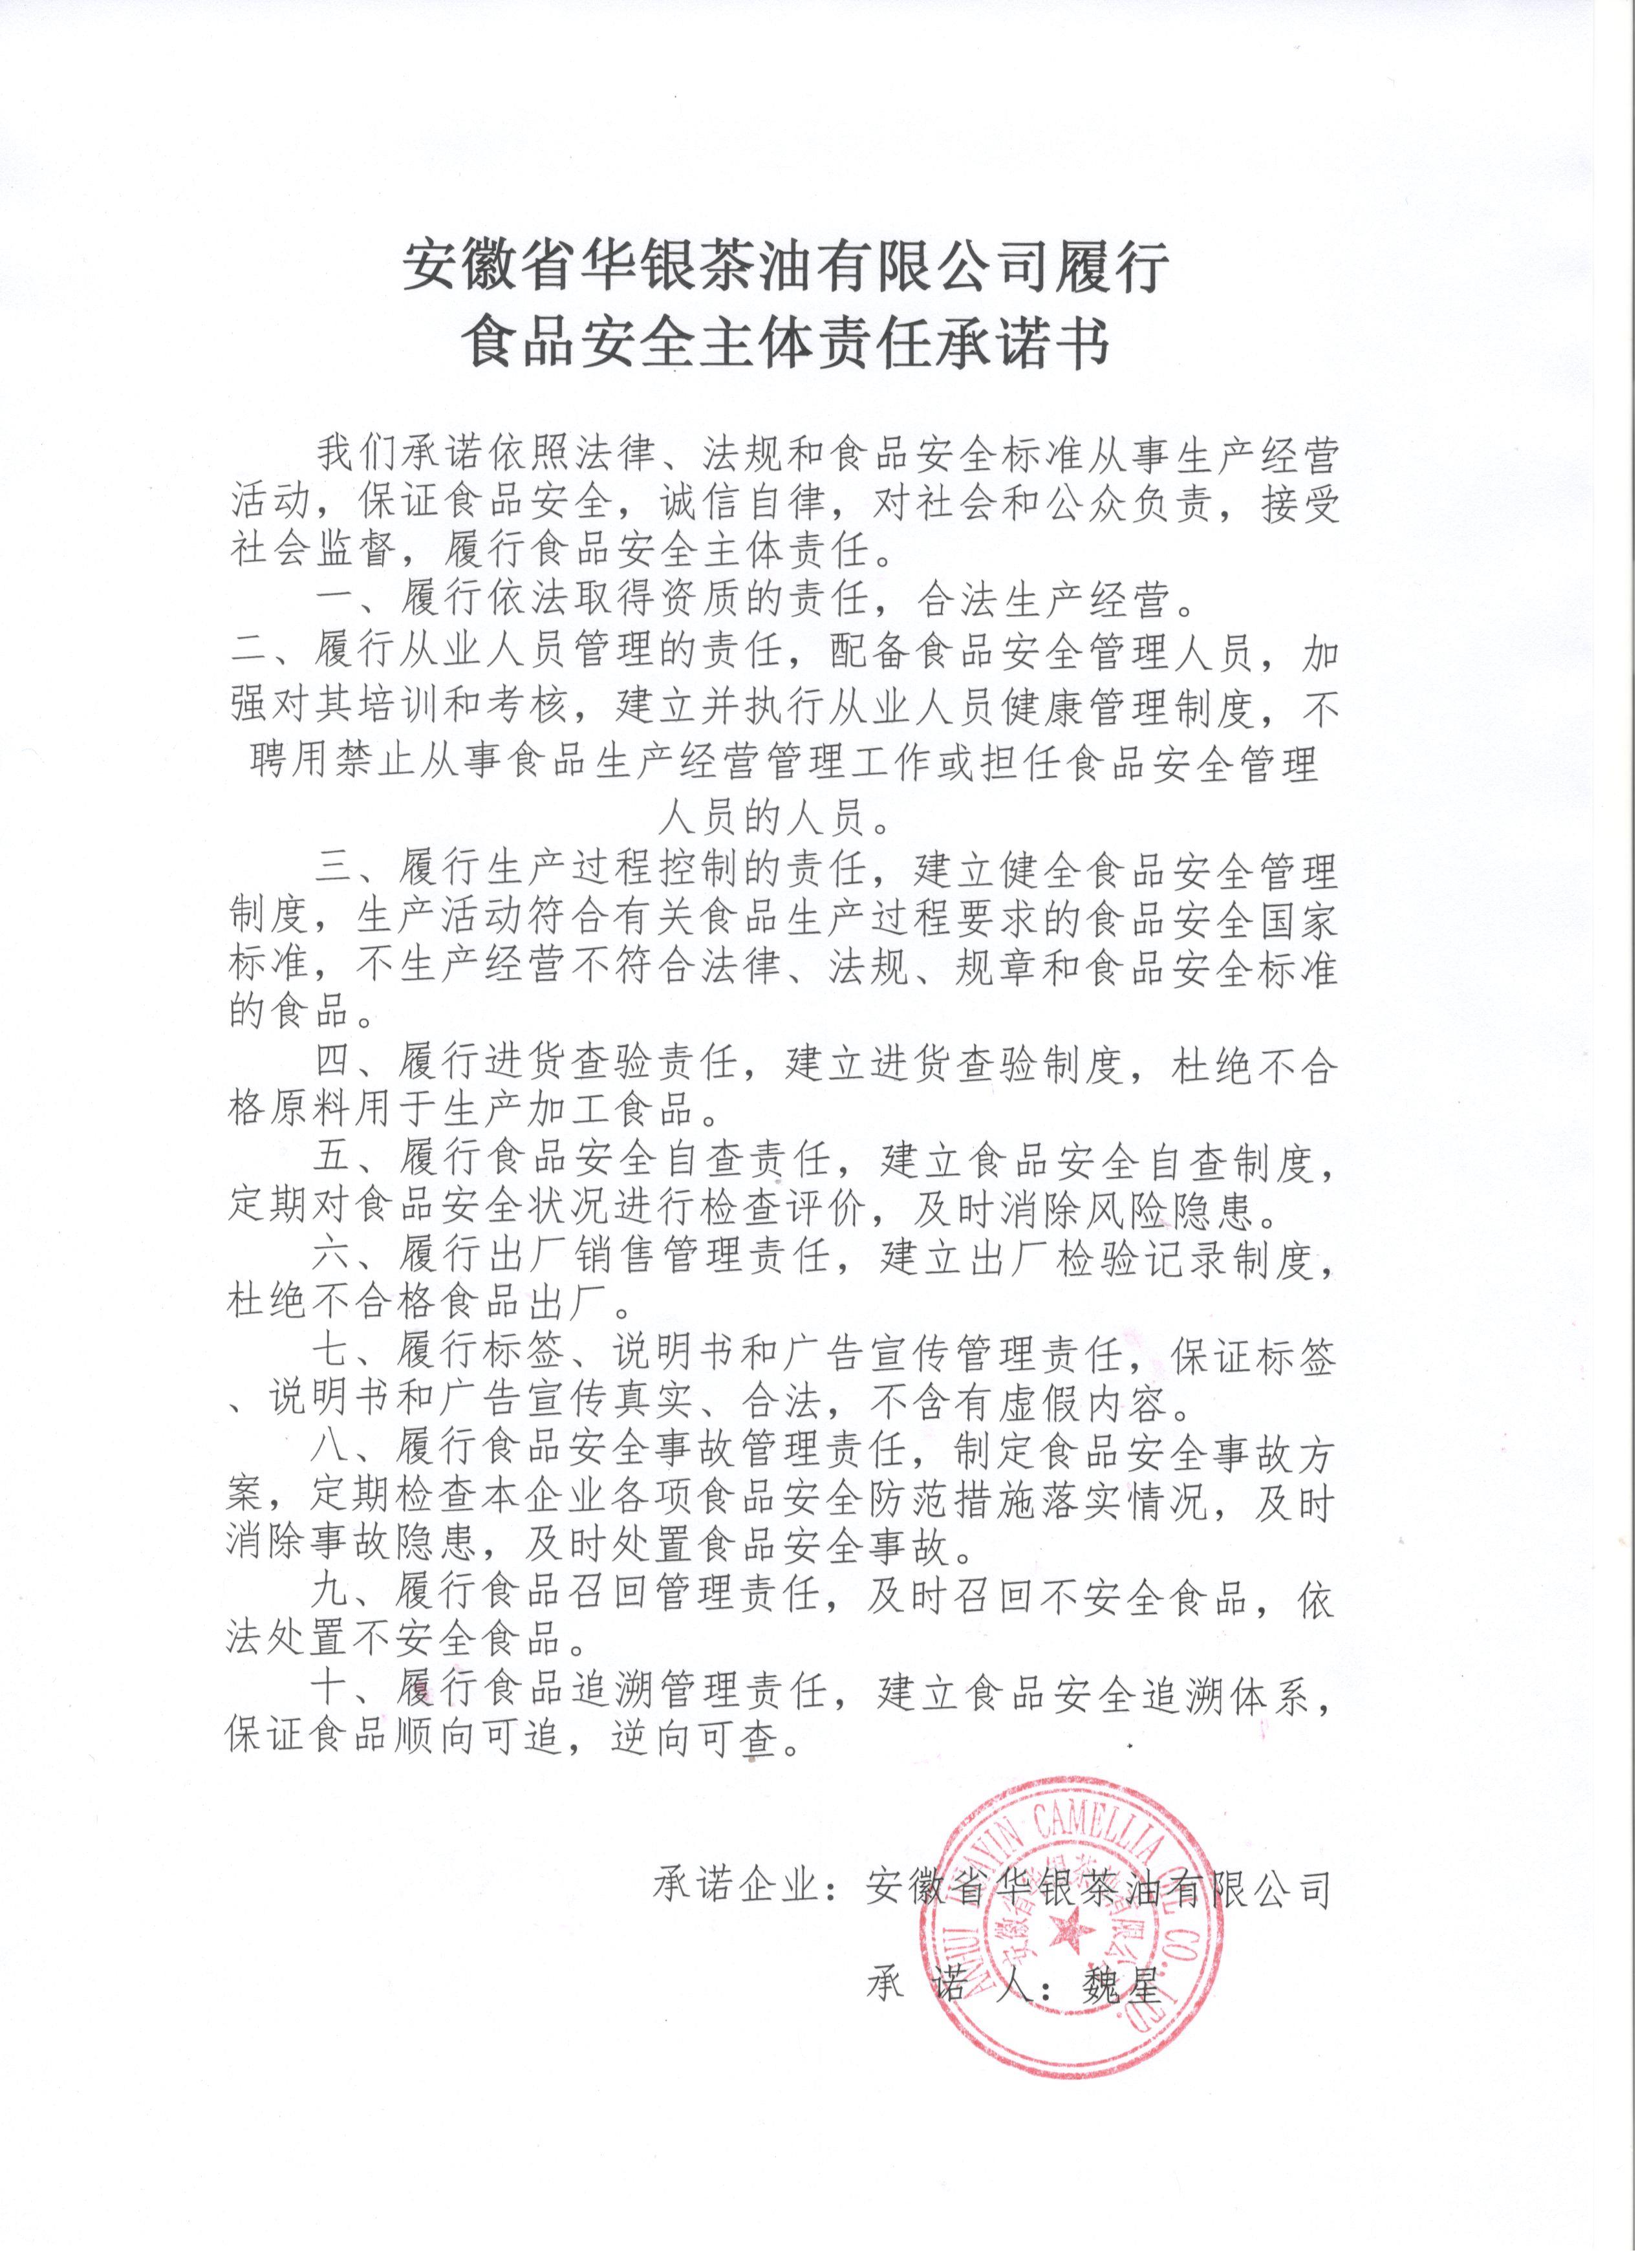 安徽省华银茶油有限公司履行食品安全主体责任承诺书(图1)